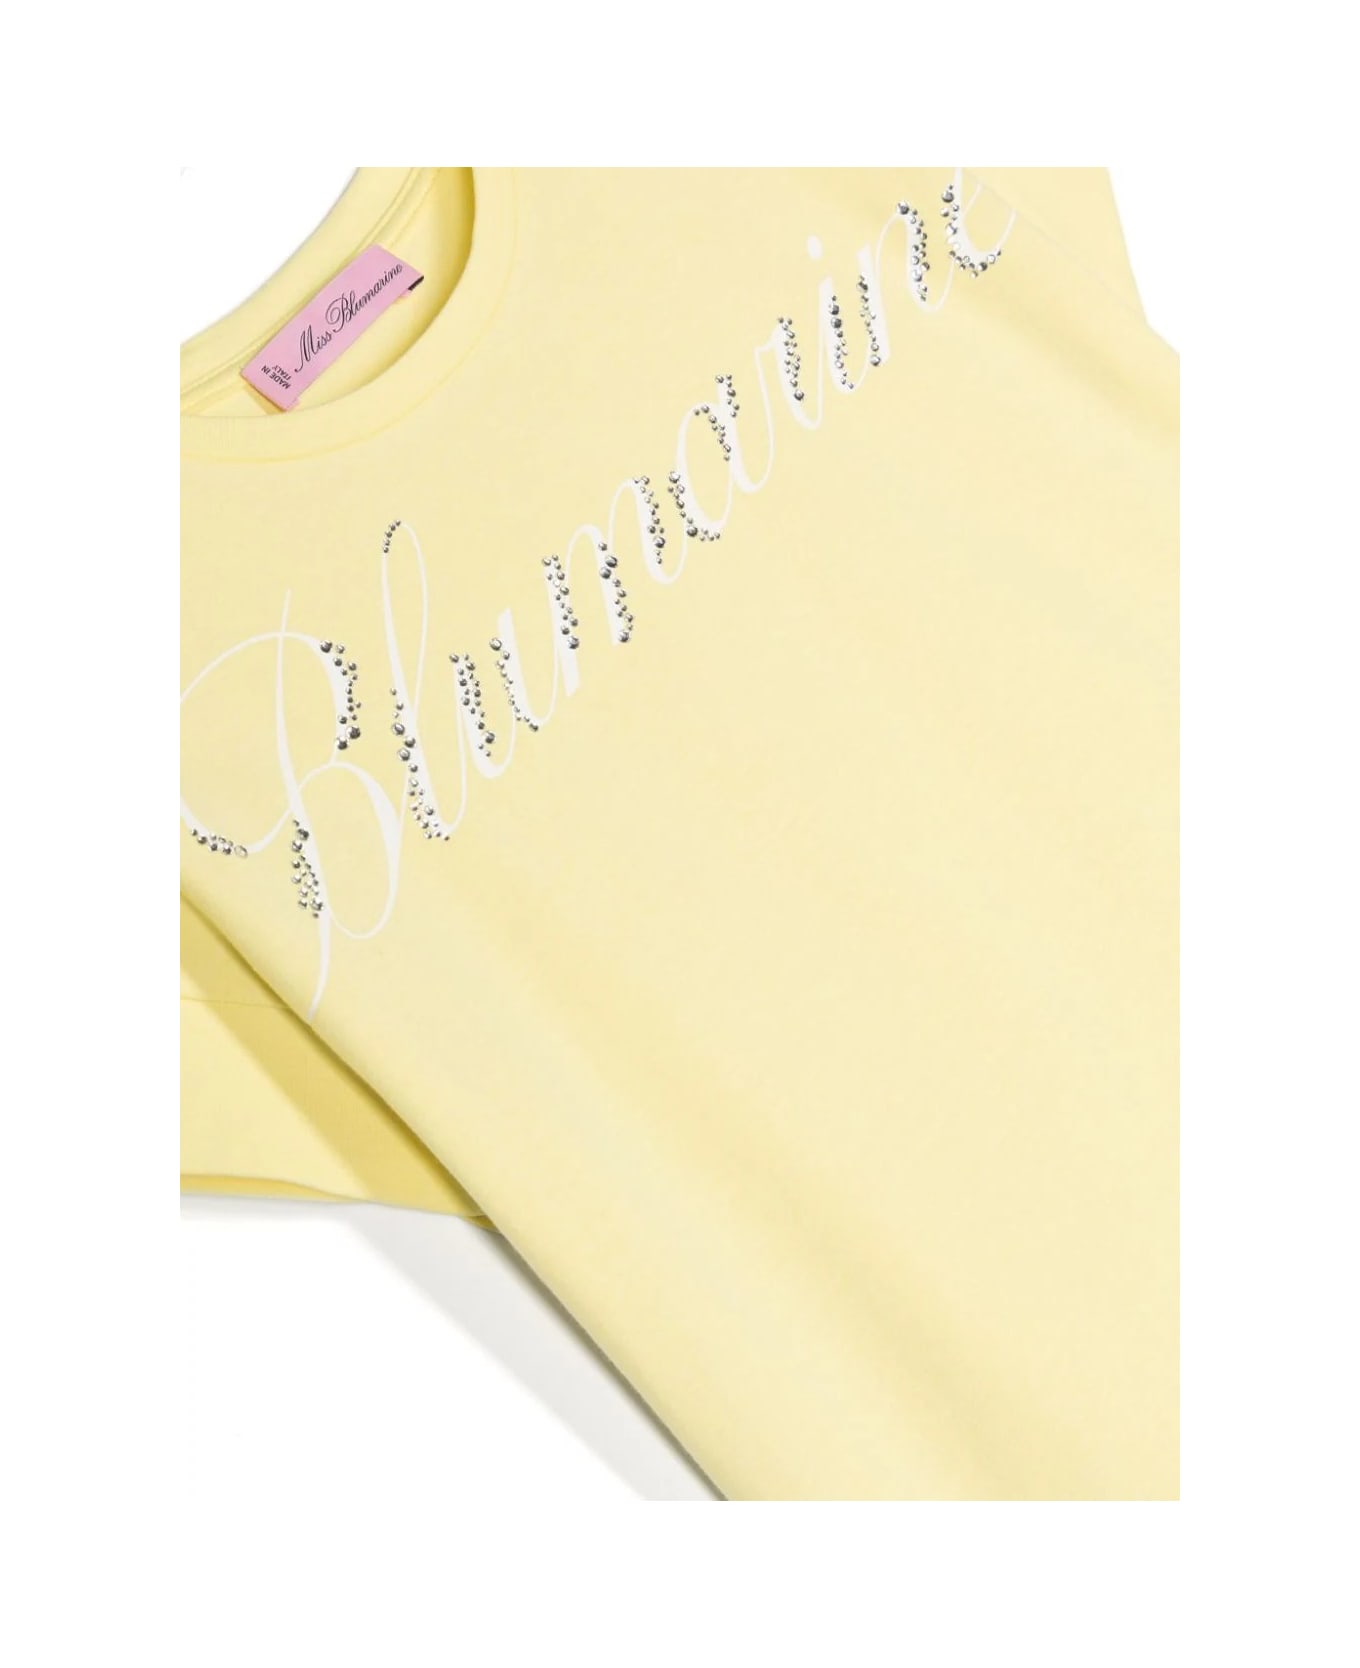 Miss Blumarine Pastel Yellow T-shirt With Logo Print With Rhinestones - Yellow